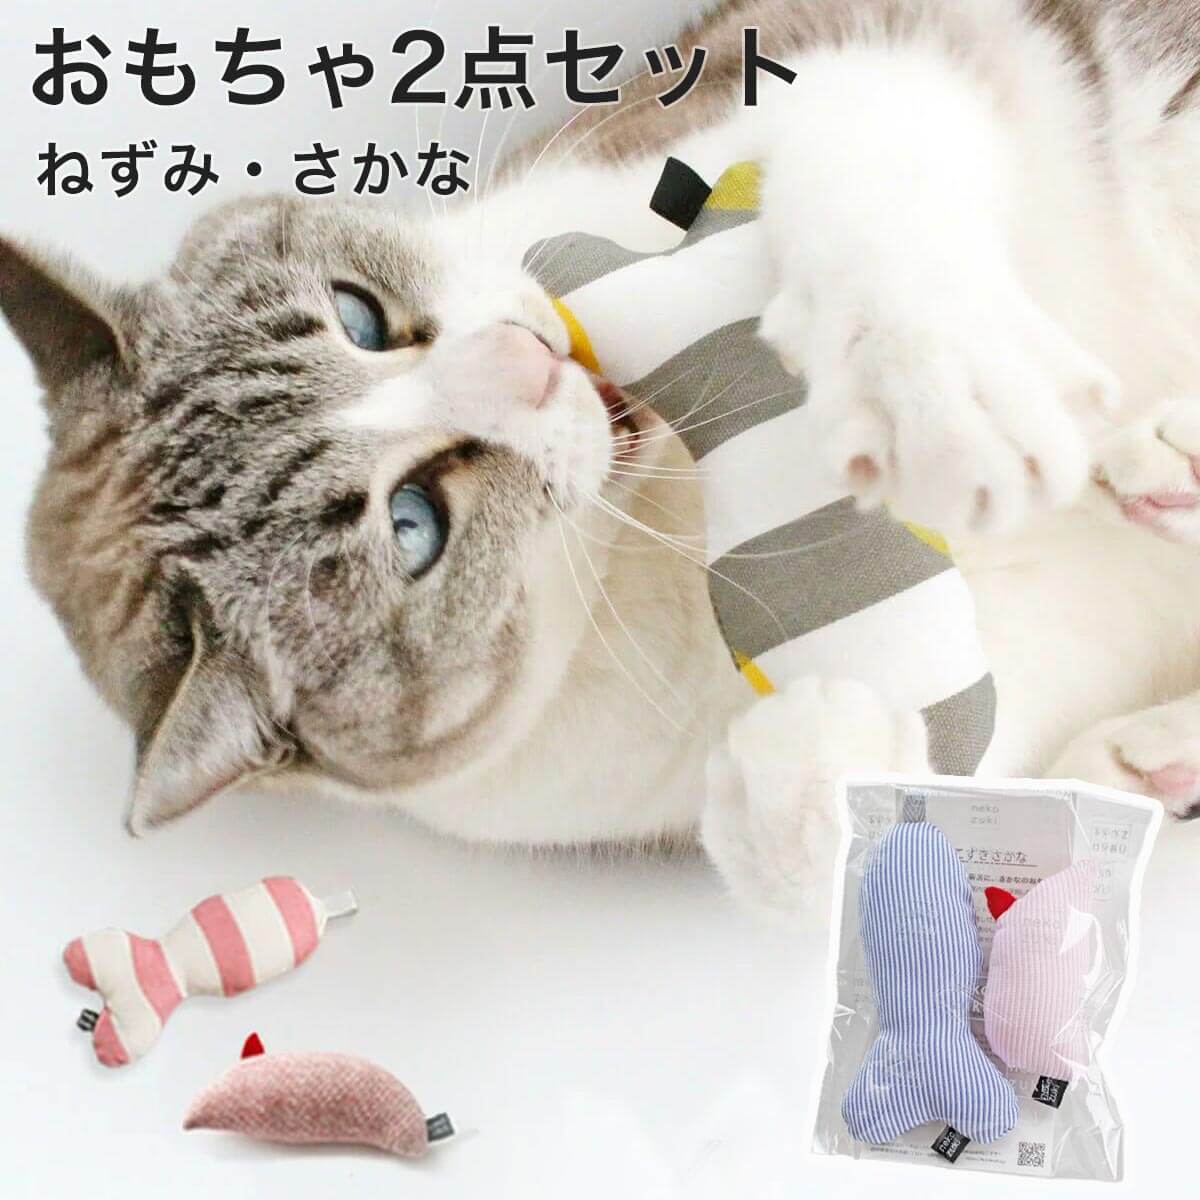 楽天市場 福袋 日本製 猫 おもちゃ セット ねずみ さかな ぬいぐるみ 猫用品の通販nekozuki ねこずき